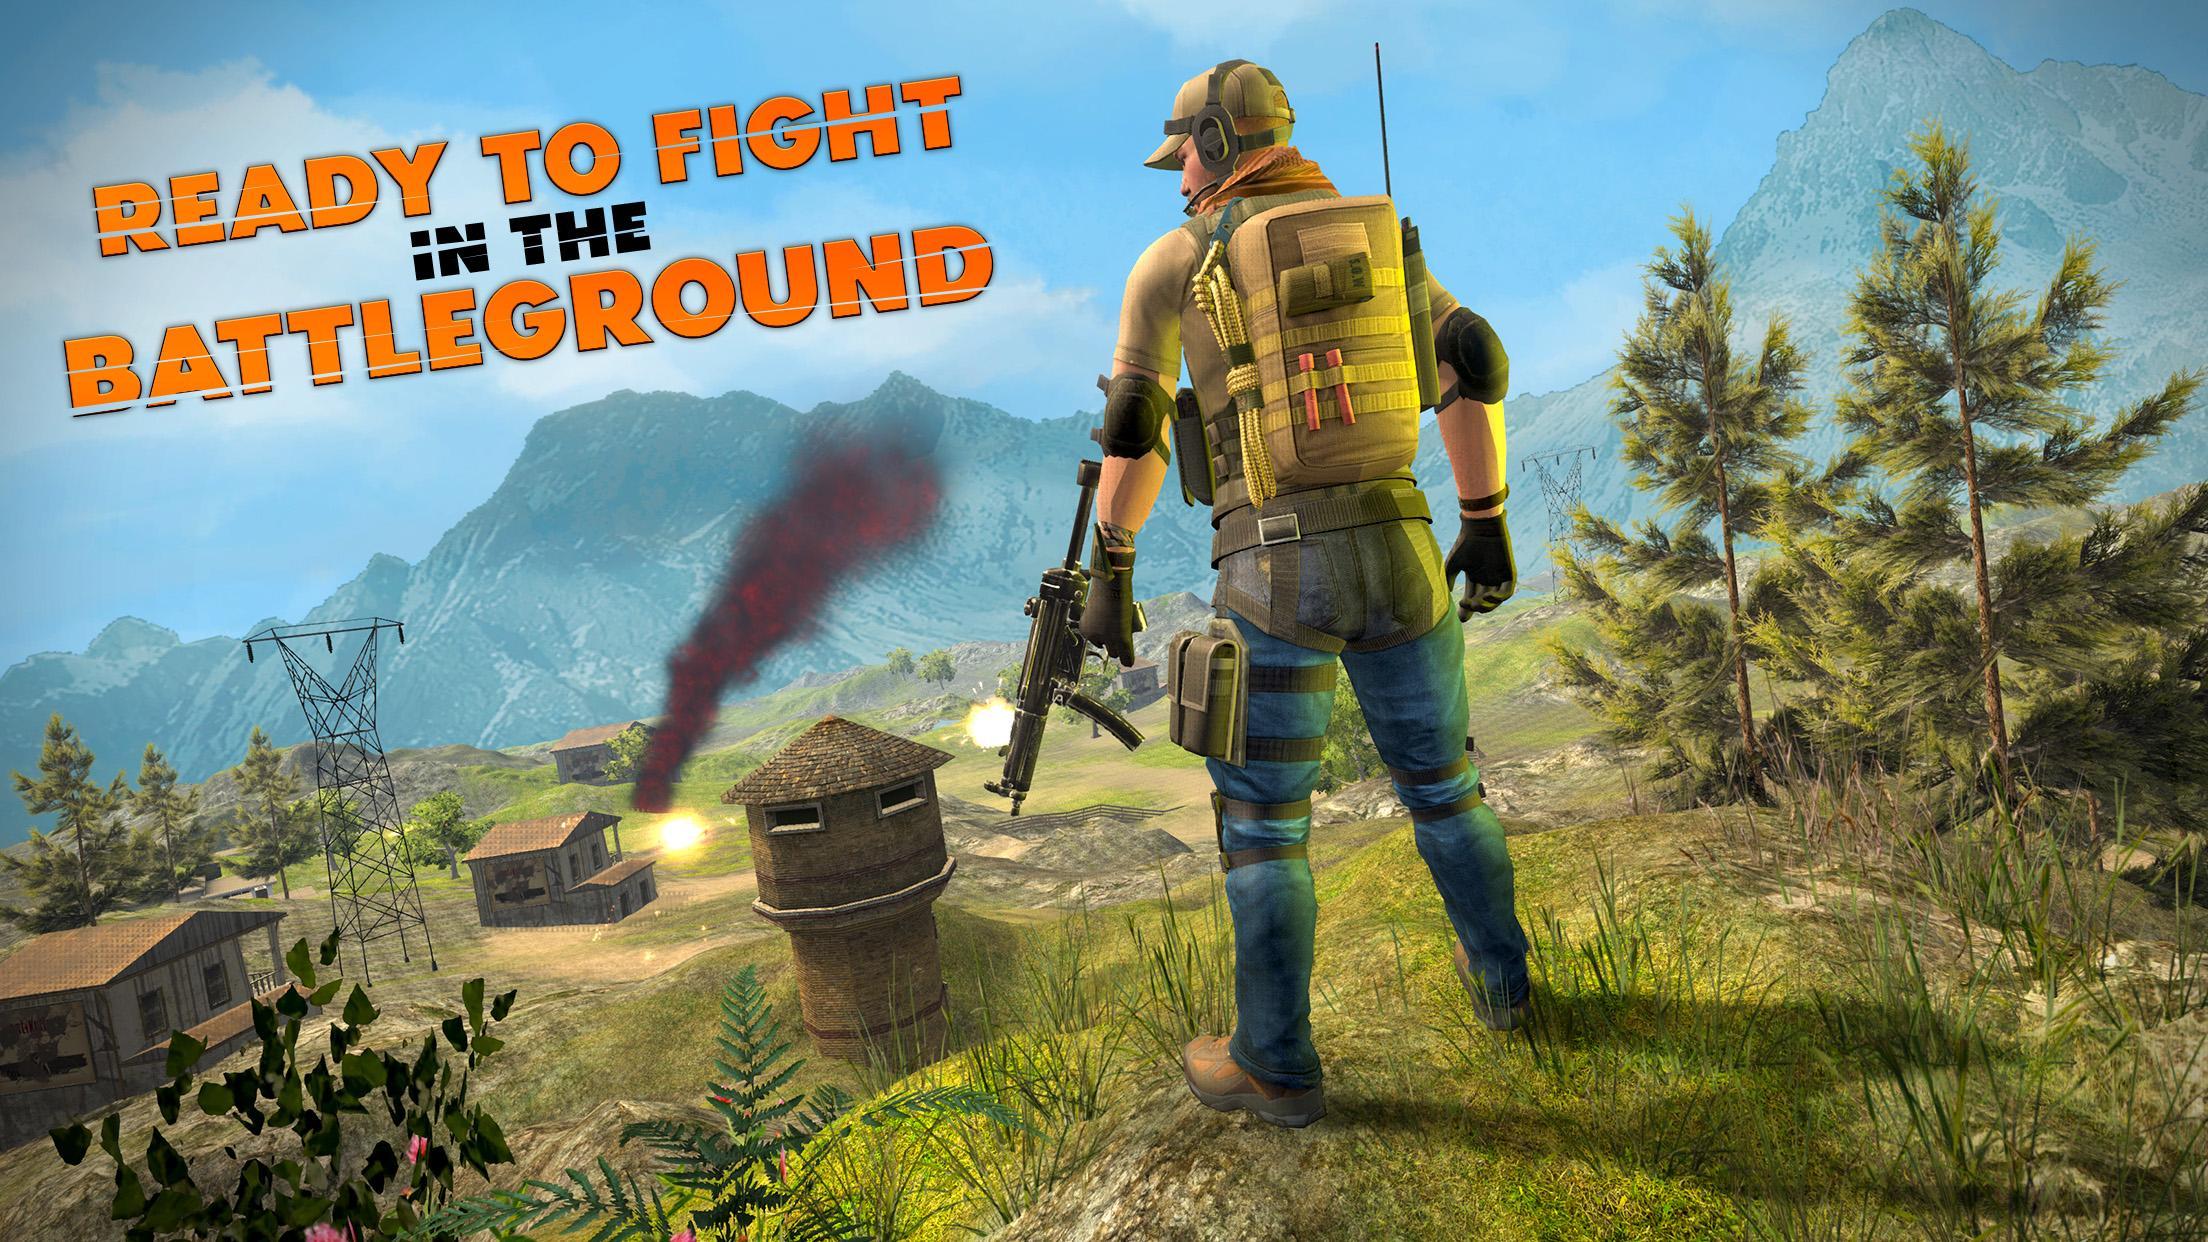 battle ground game download